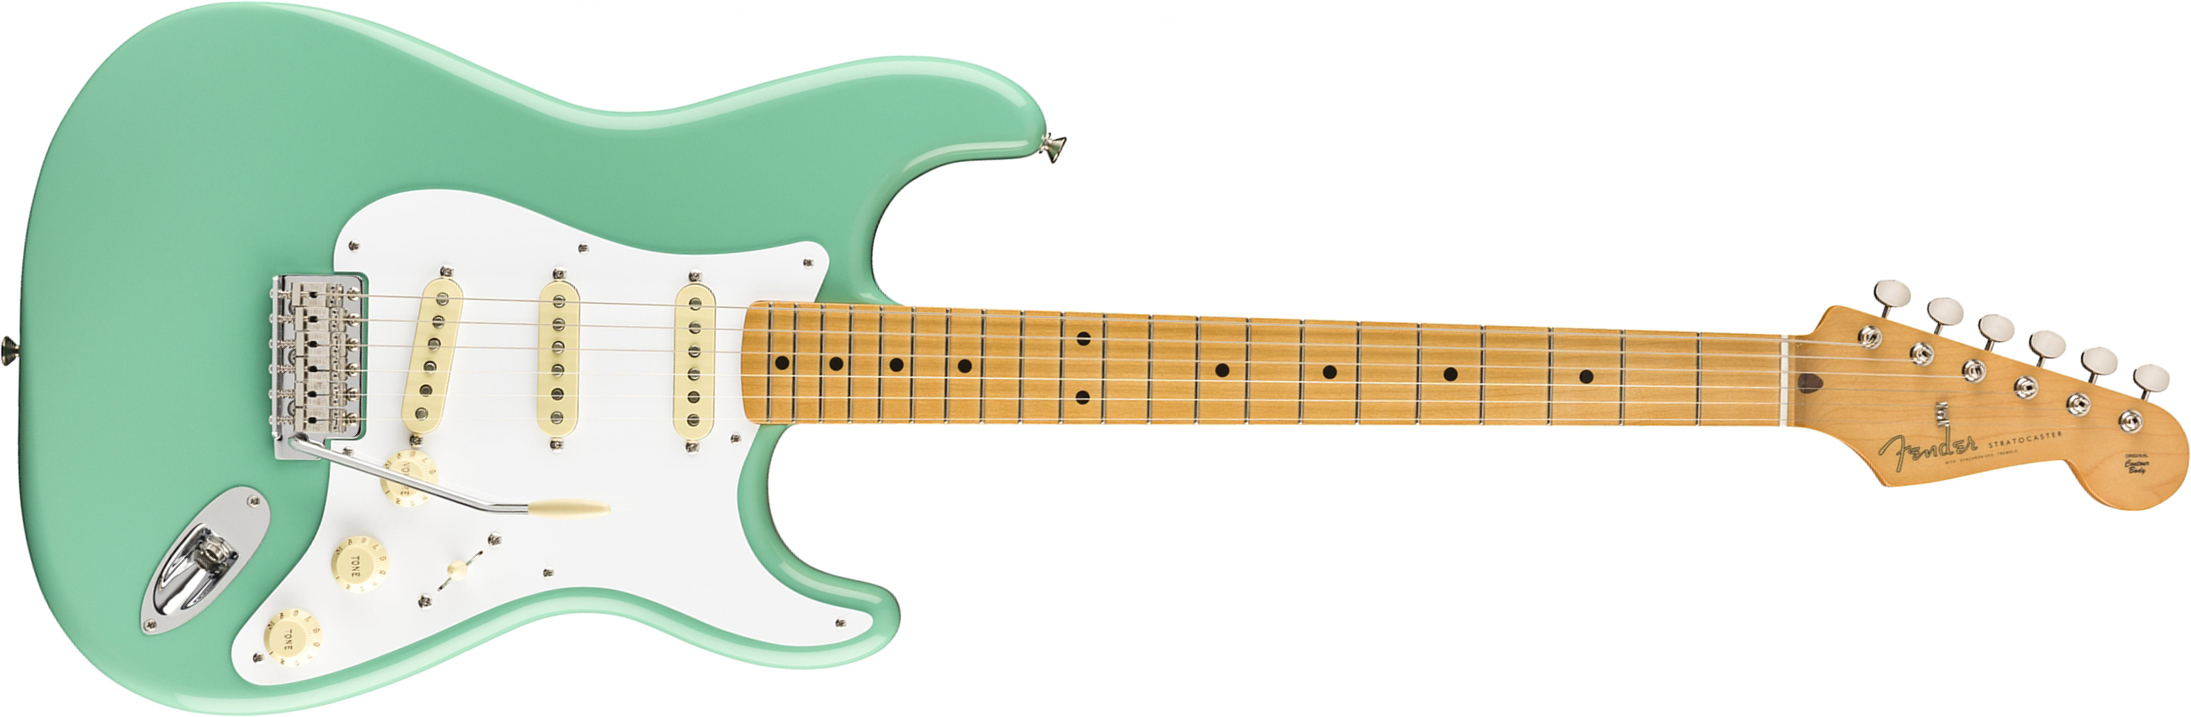 Fender Strat 50s Vintera Vintage Mex Mn - Seafoam Green - Guitarra eléctrica con forma de str. - Main picture